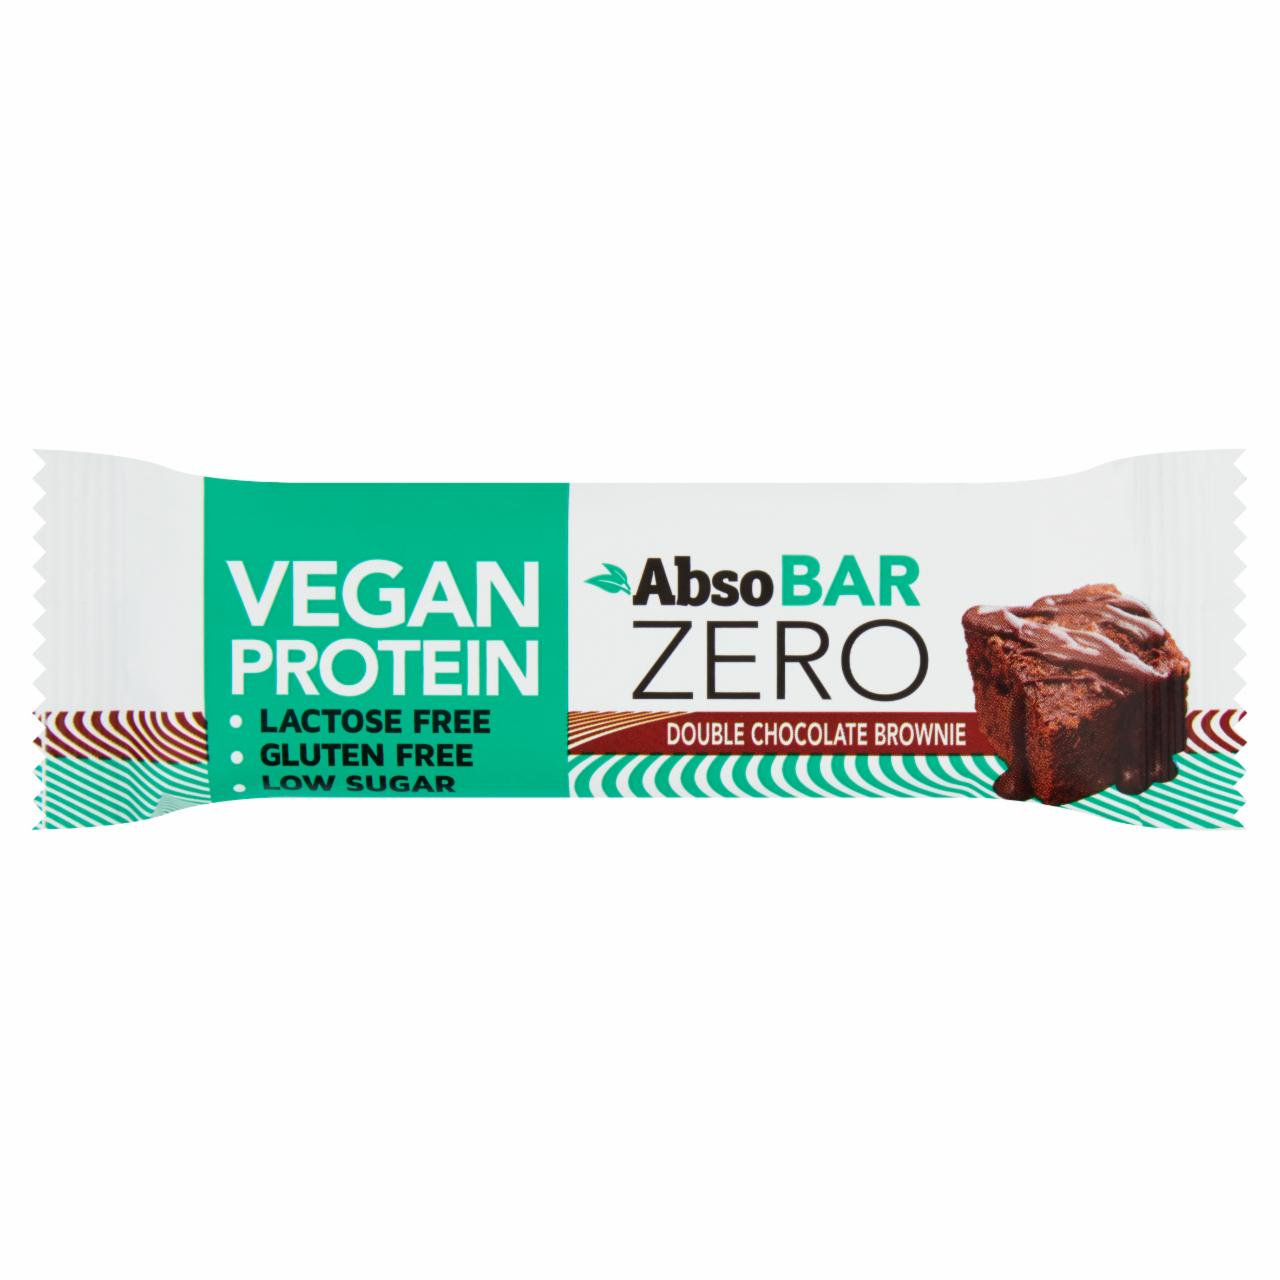 Képek - Absobar Zero glutén- és laktózmentes, brownie ízesítésű, magas fehérjetartalmú szelet